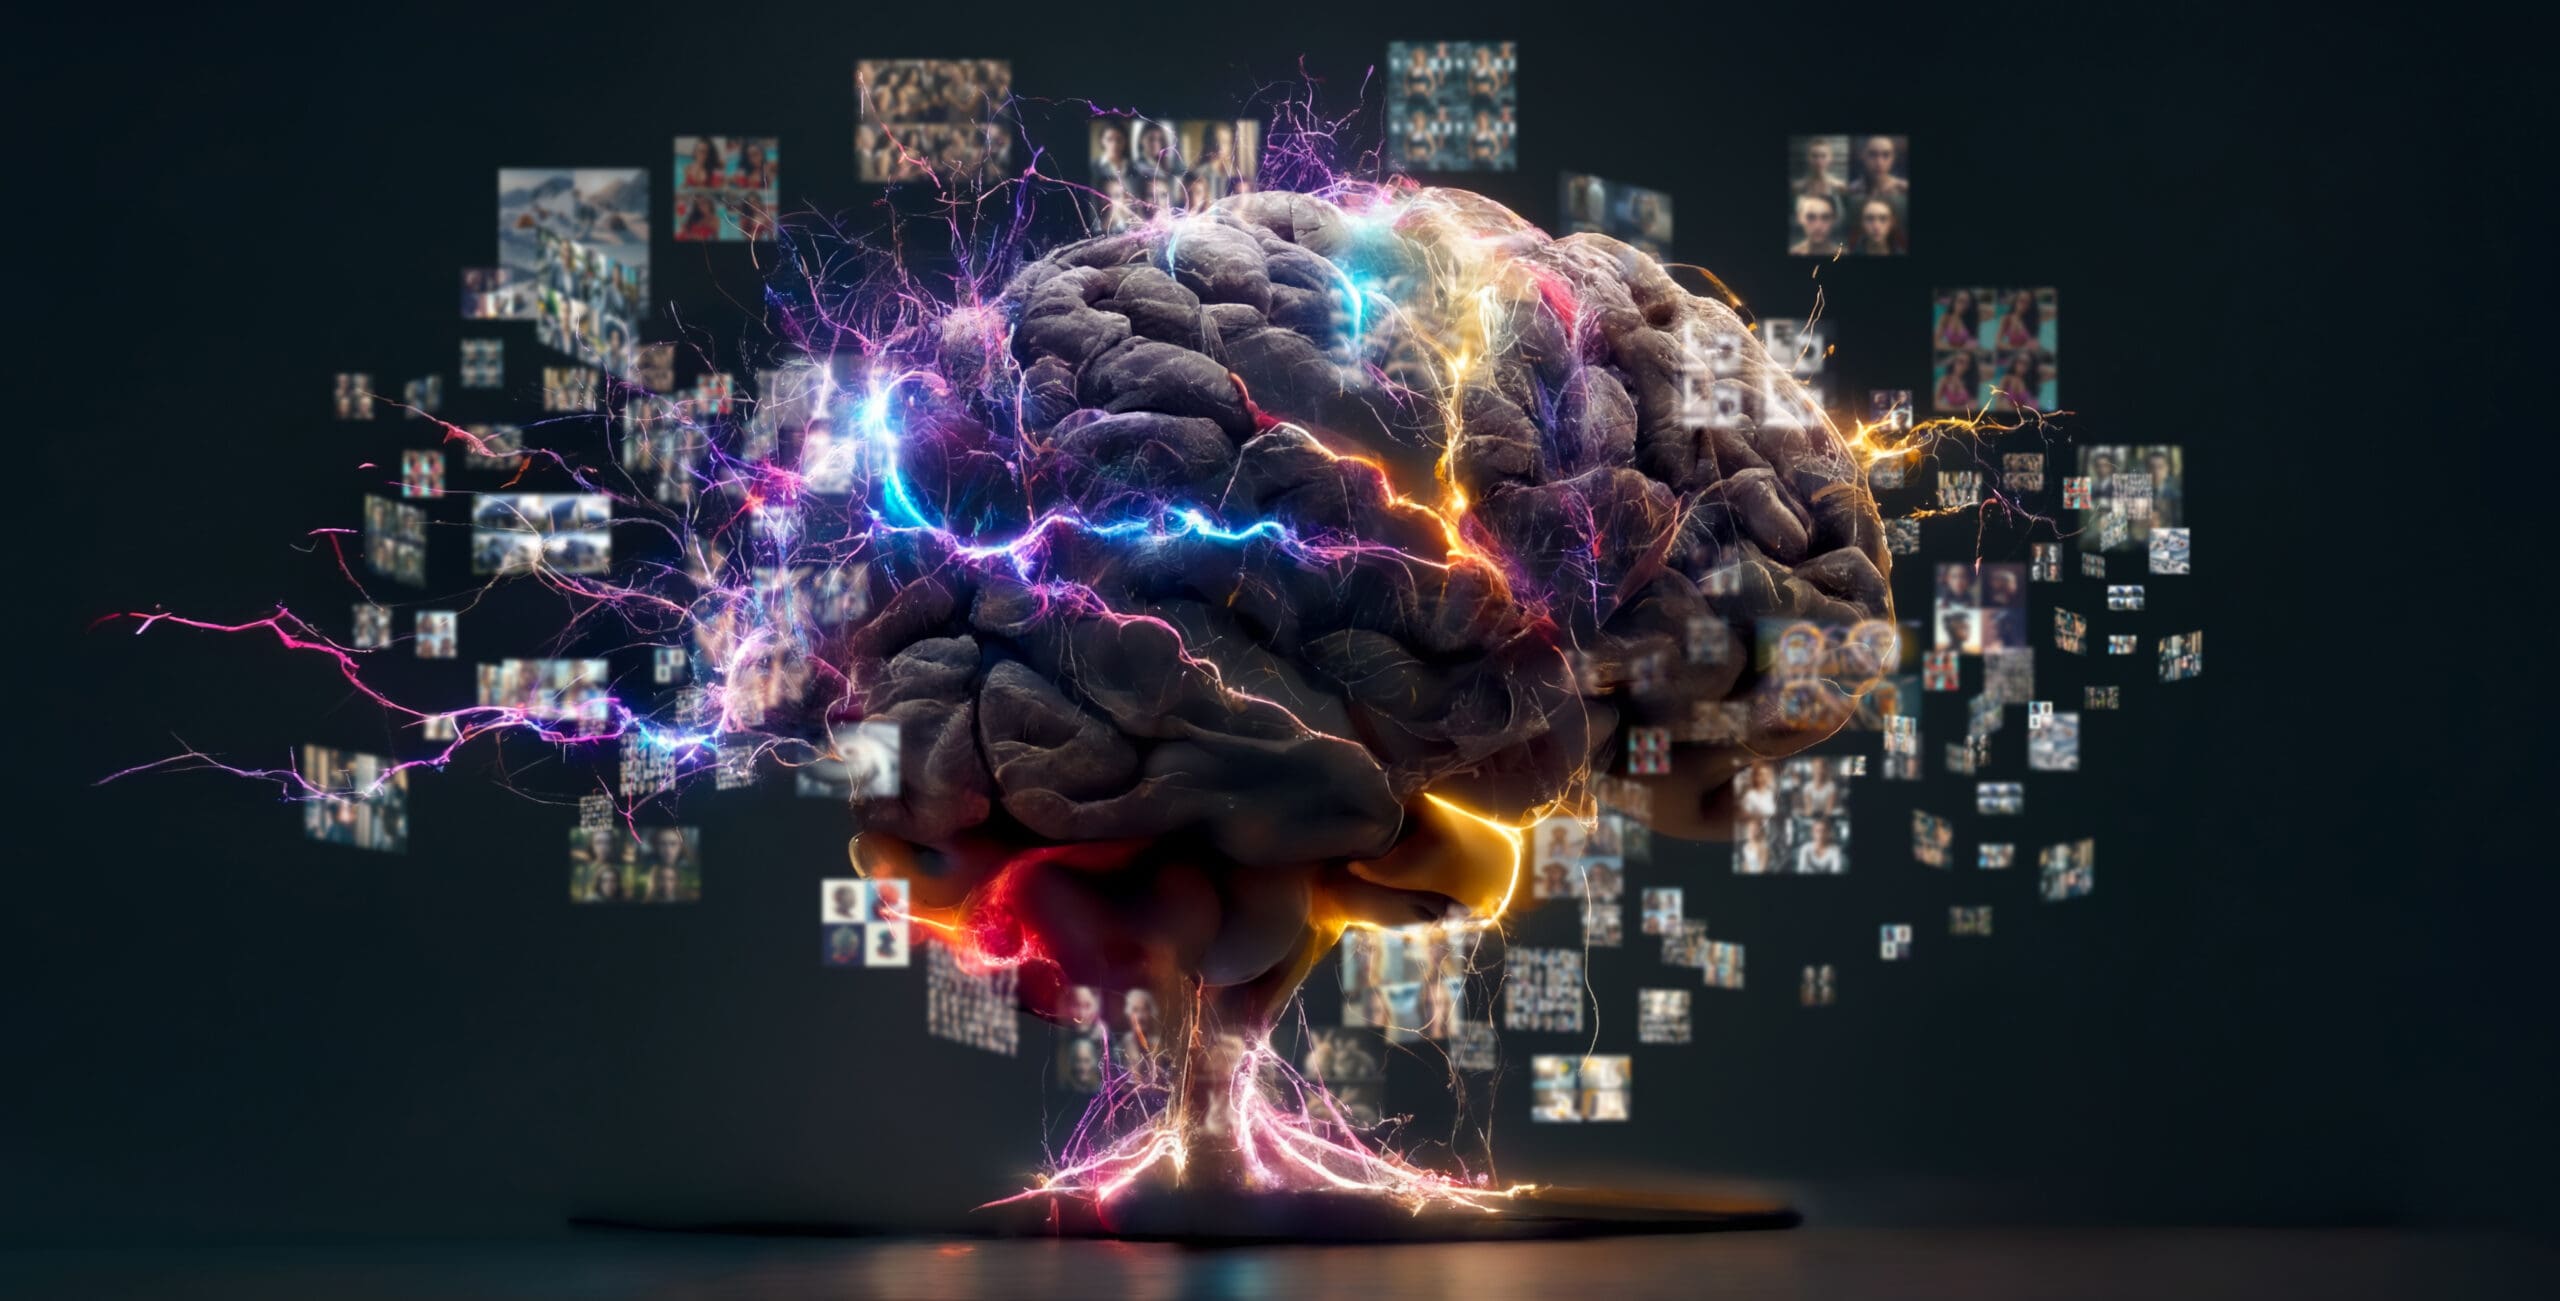 Eine lebendige Darstellung eines Gehirns mit elektrischen Impulsen, die die komplexen Prozesse der künstlichen Intelligenz symbolisiert.